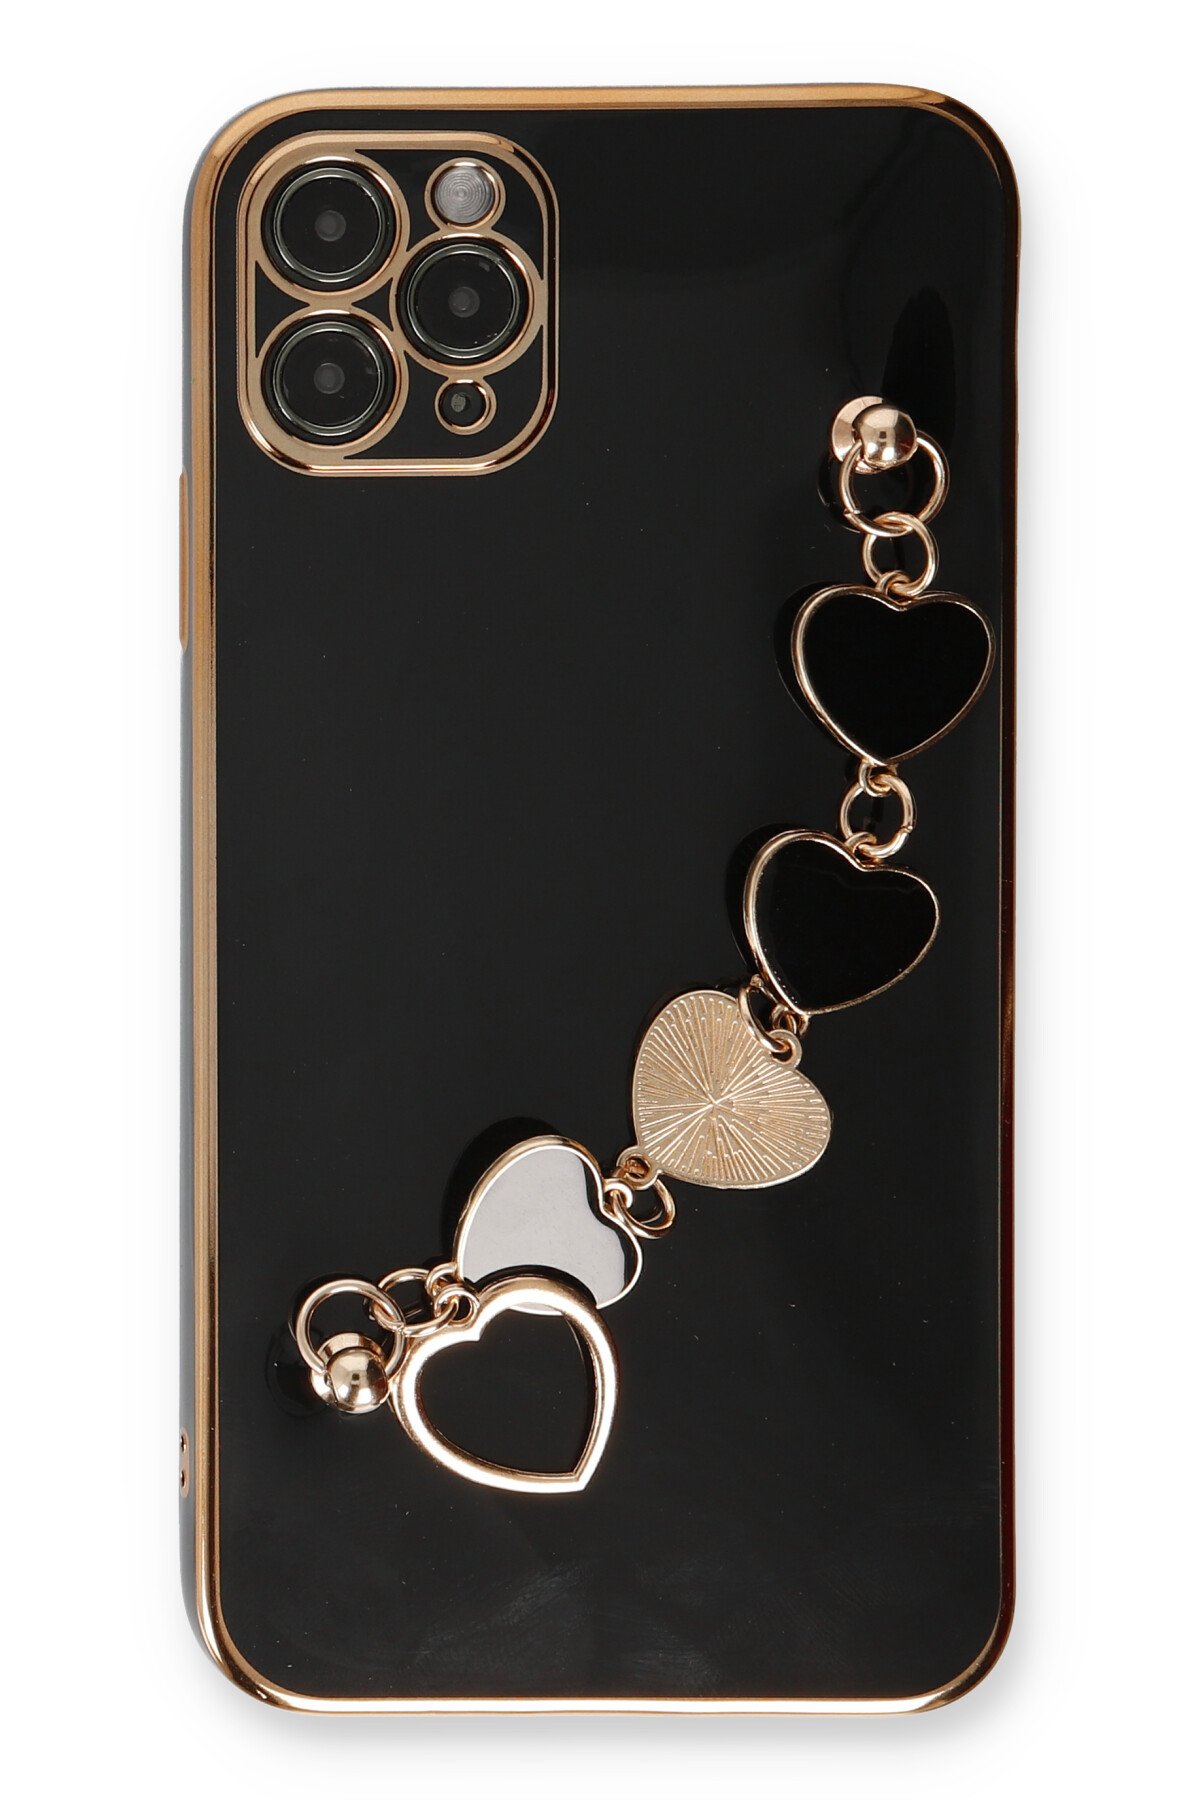 Newface iPhone 11 Pro Max Kılıf Coco Deri Silikon Kapak - Beyaz